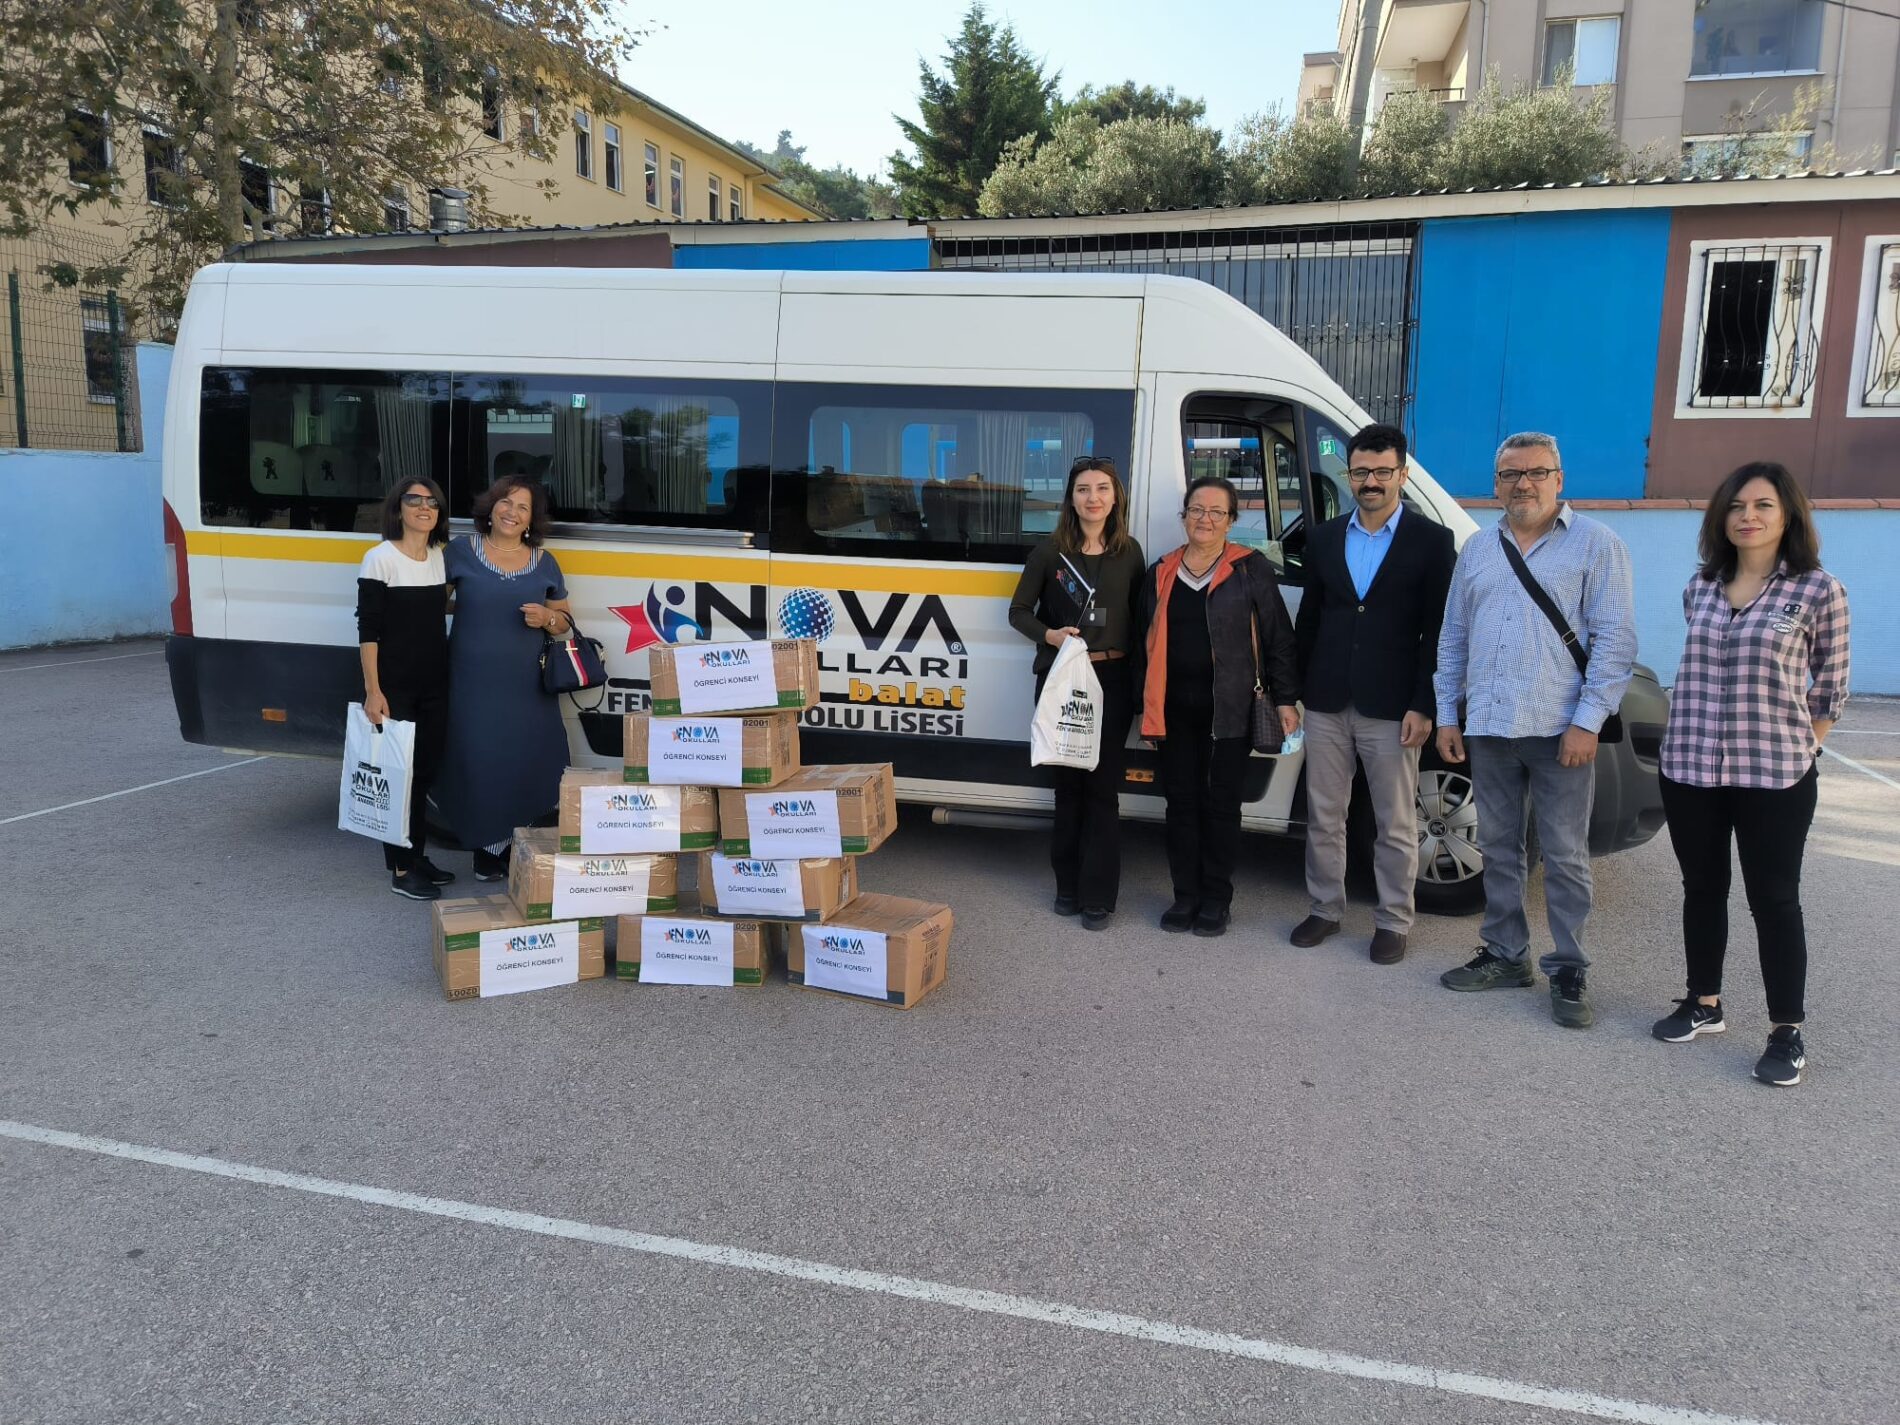 TYSD Mudanya Şubemiz Nova Okullarına Teşekkürlerini Sunmaktadır